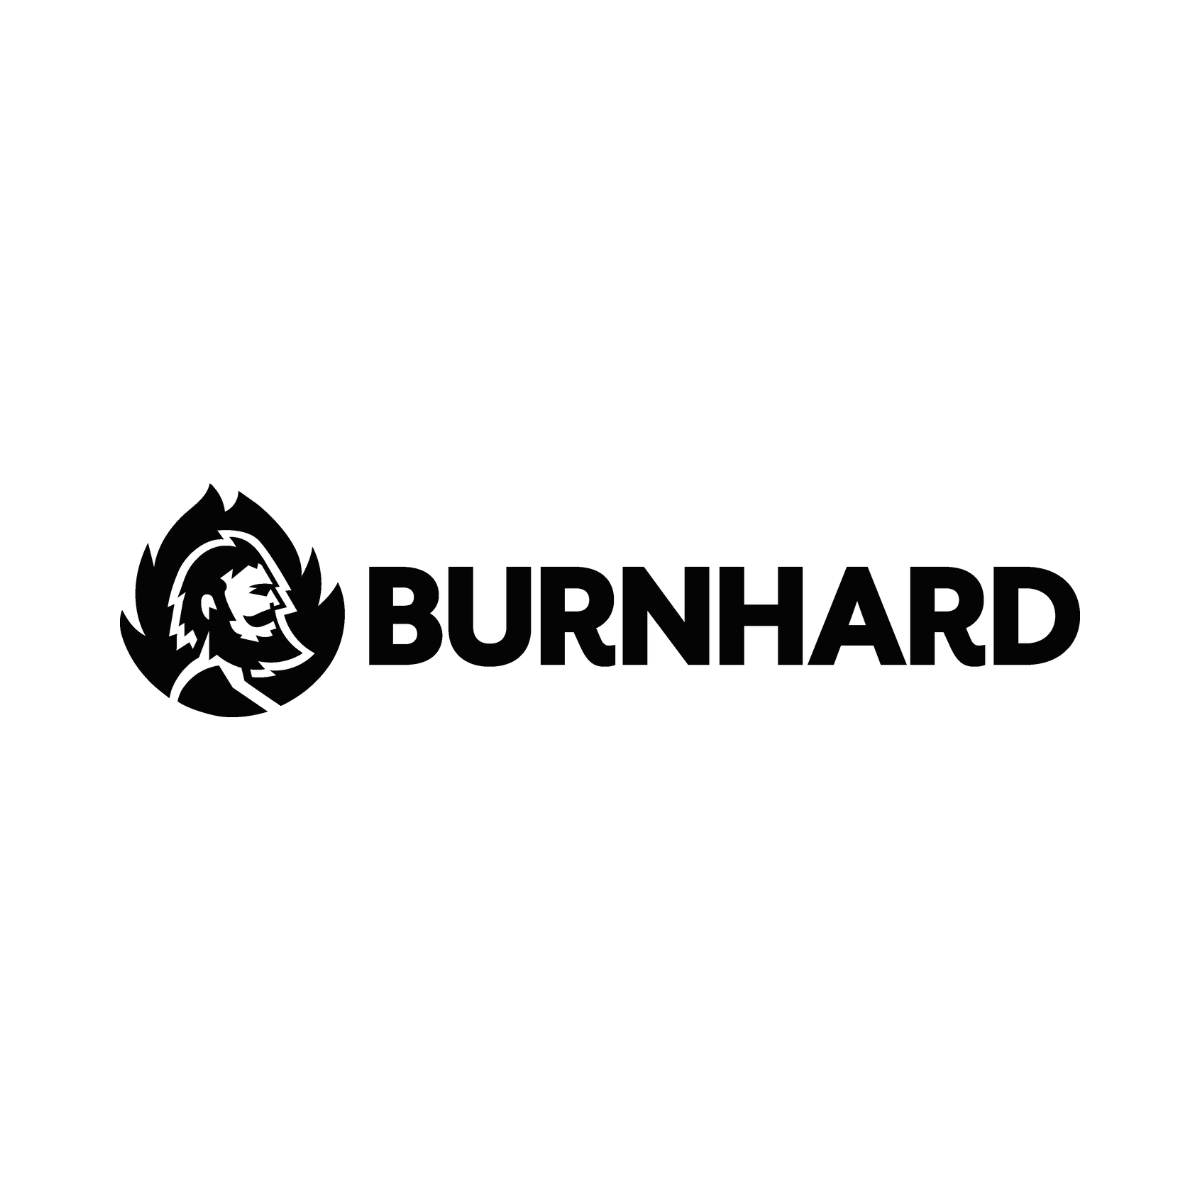 Burnhard-original-logo